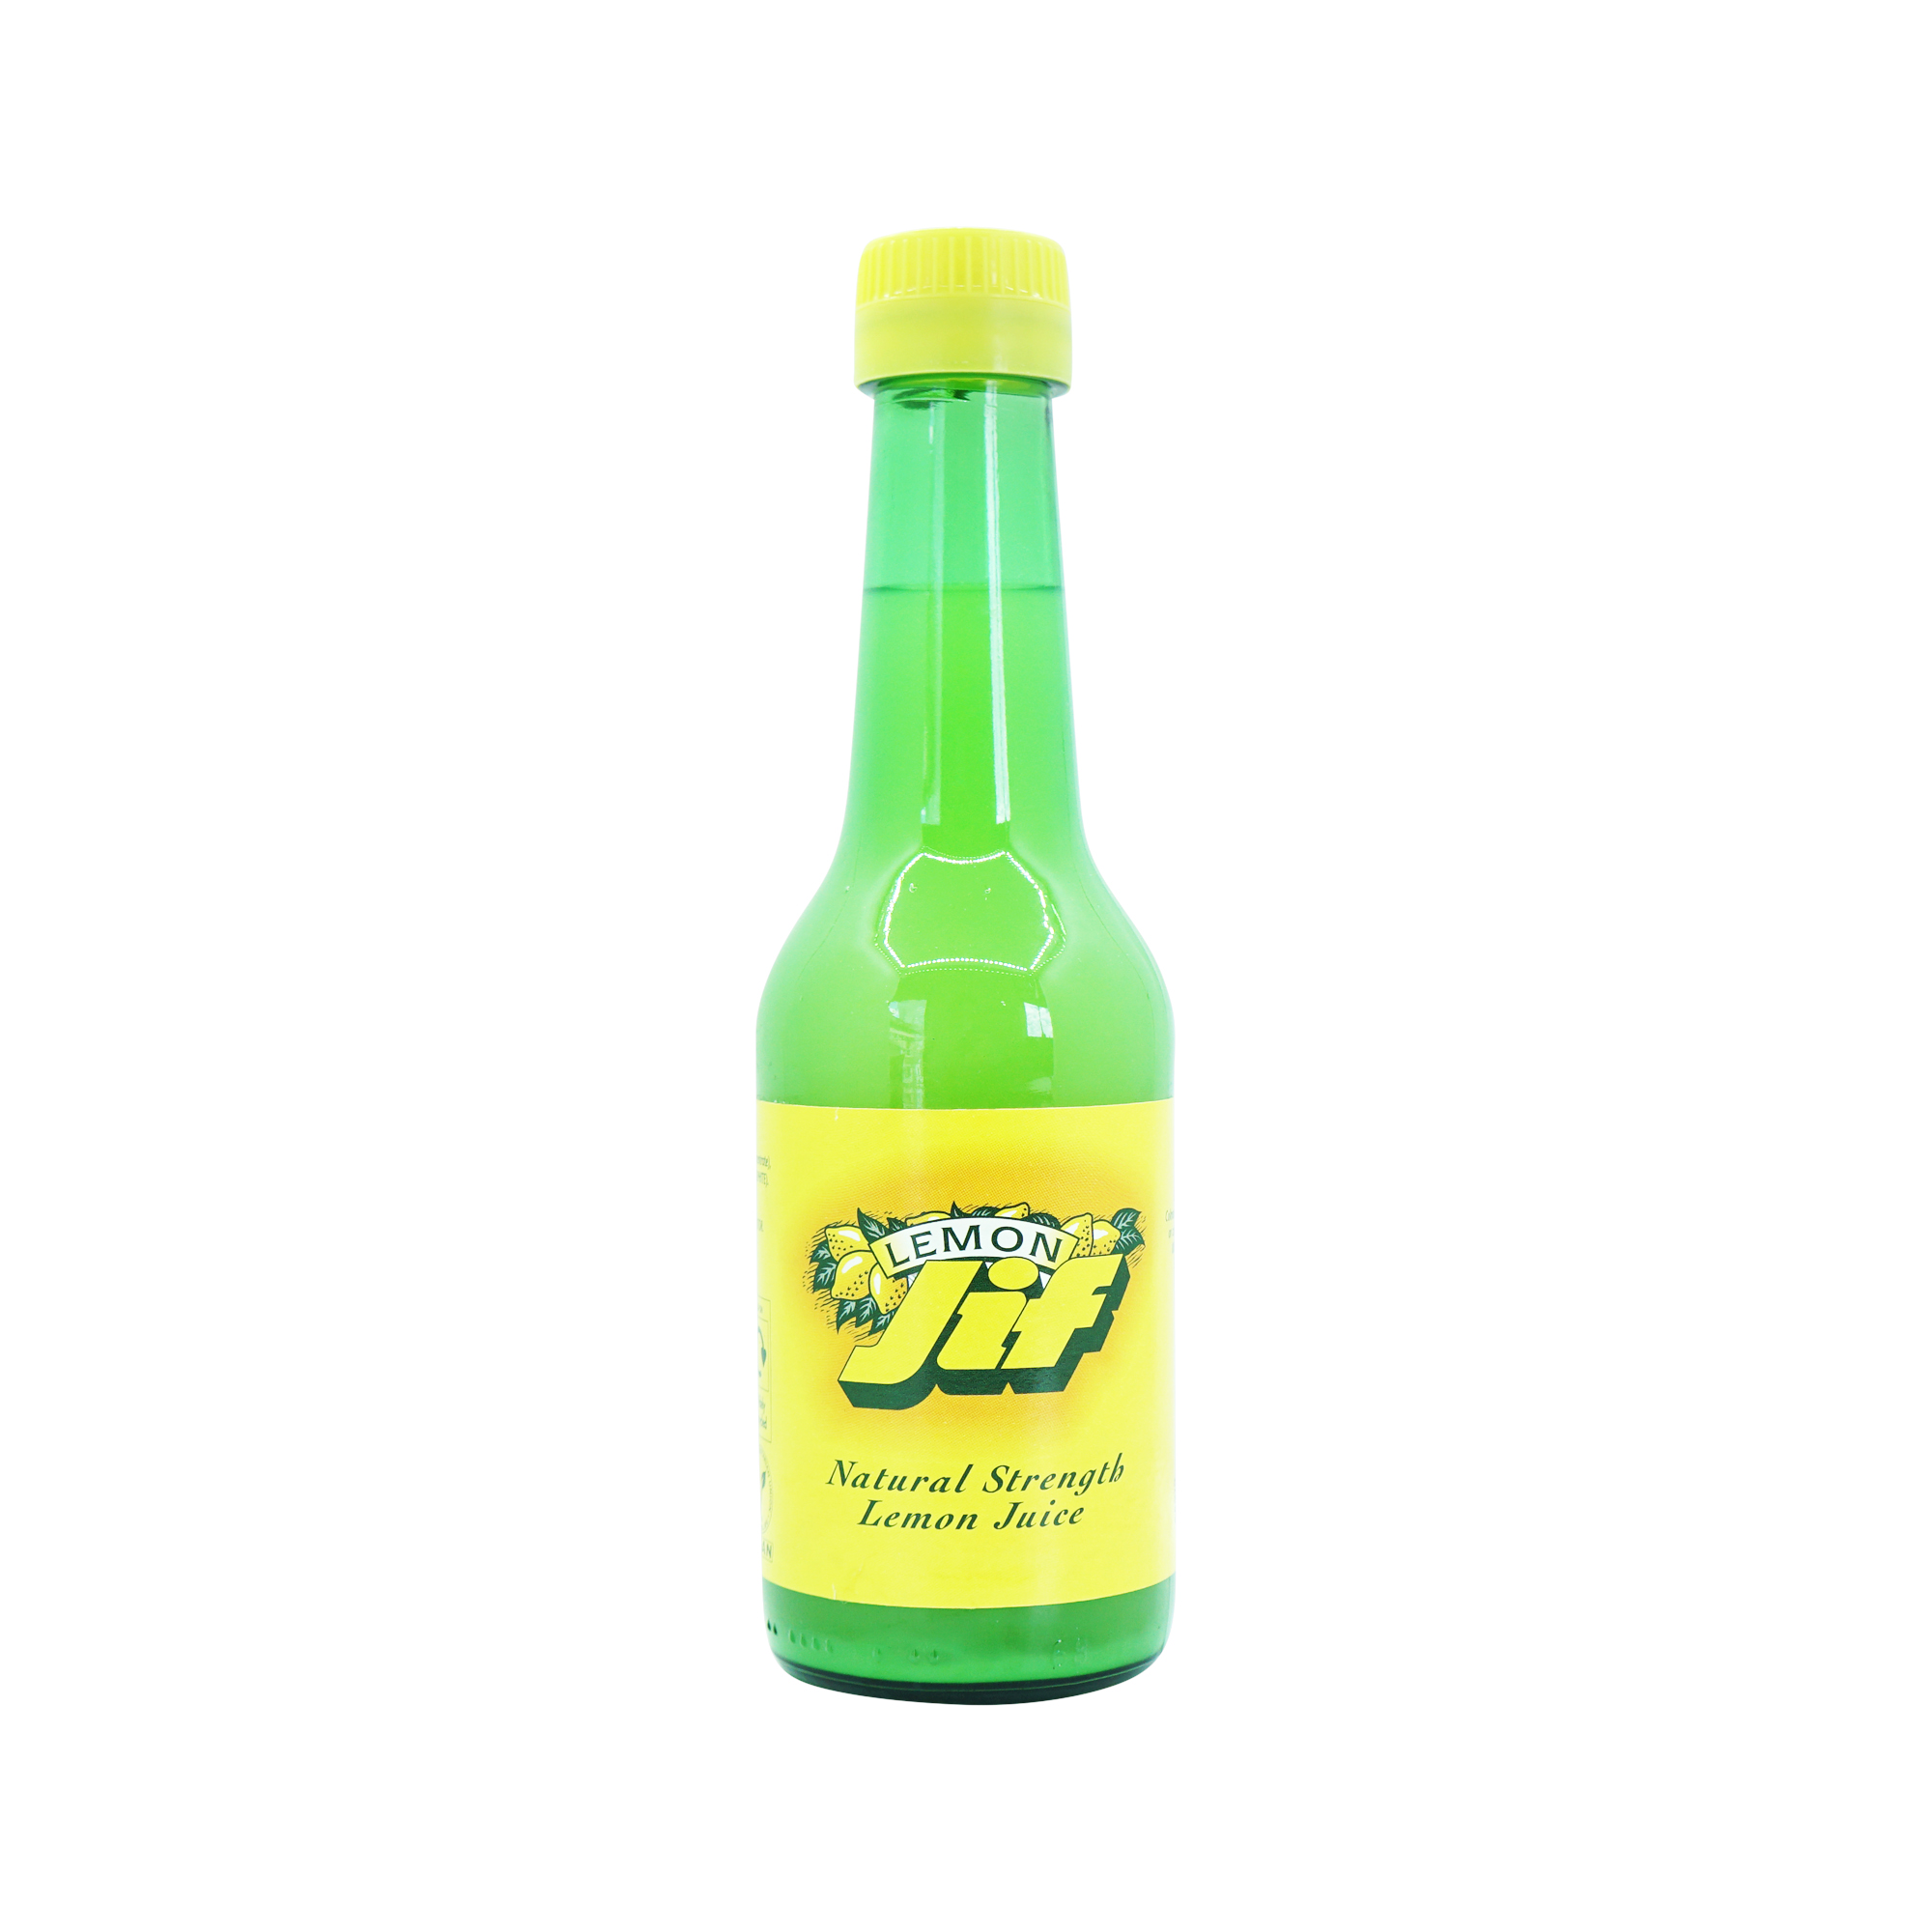 Jif Natural Strength Lemon Juice (250ml)